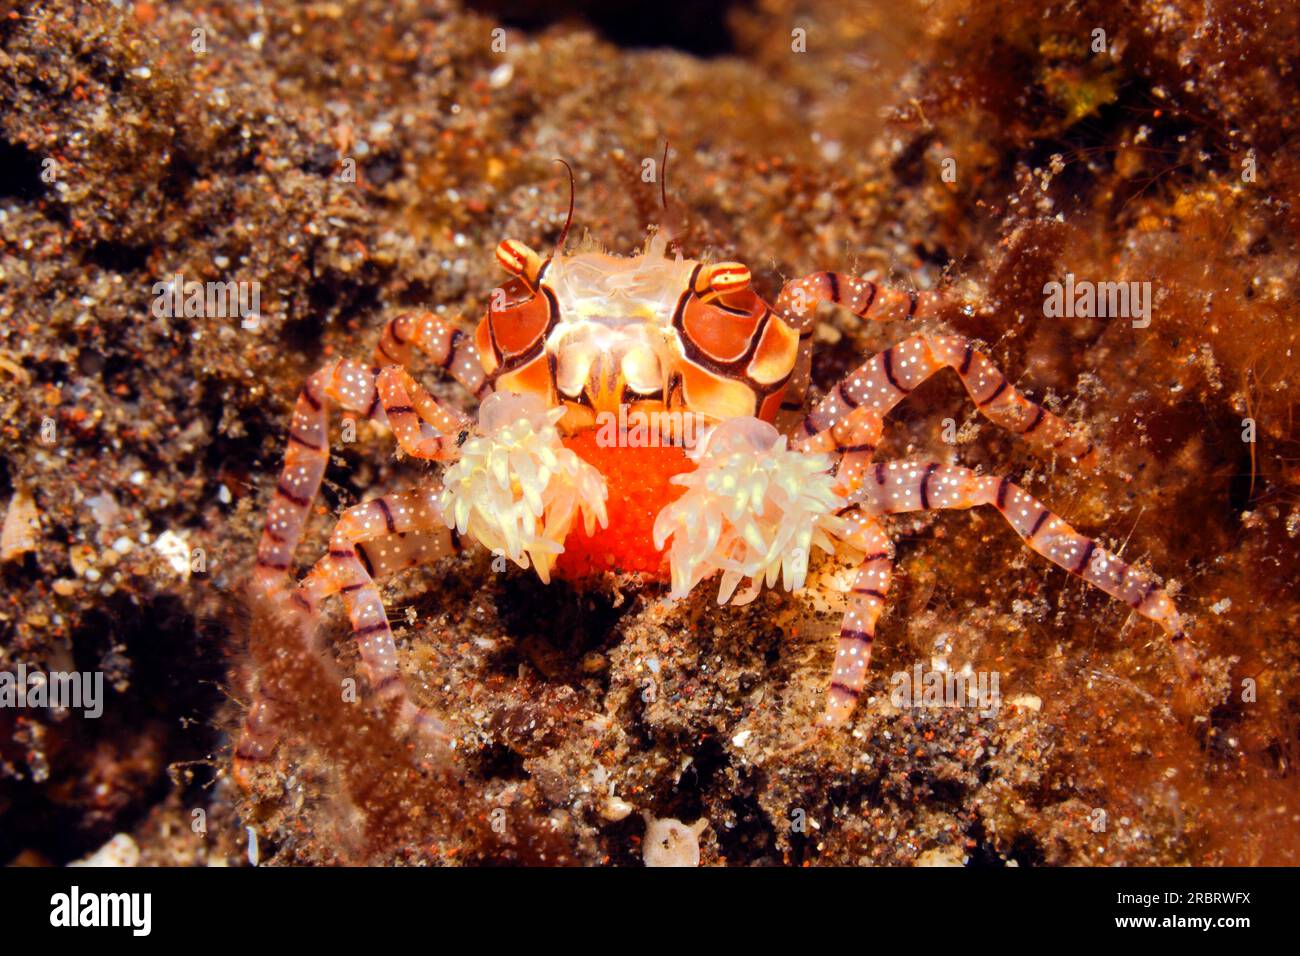 Crabe boxer ou crabe Pom Pom, Lybia tessellata, avec des œufs rouges, portant une anémone, Triactis sp dans sa griffe. Crabe femelle avec oeufs rouges.Tulamben, Bali, in Banque D'Images